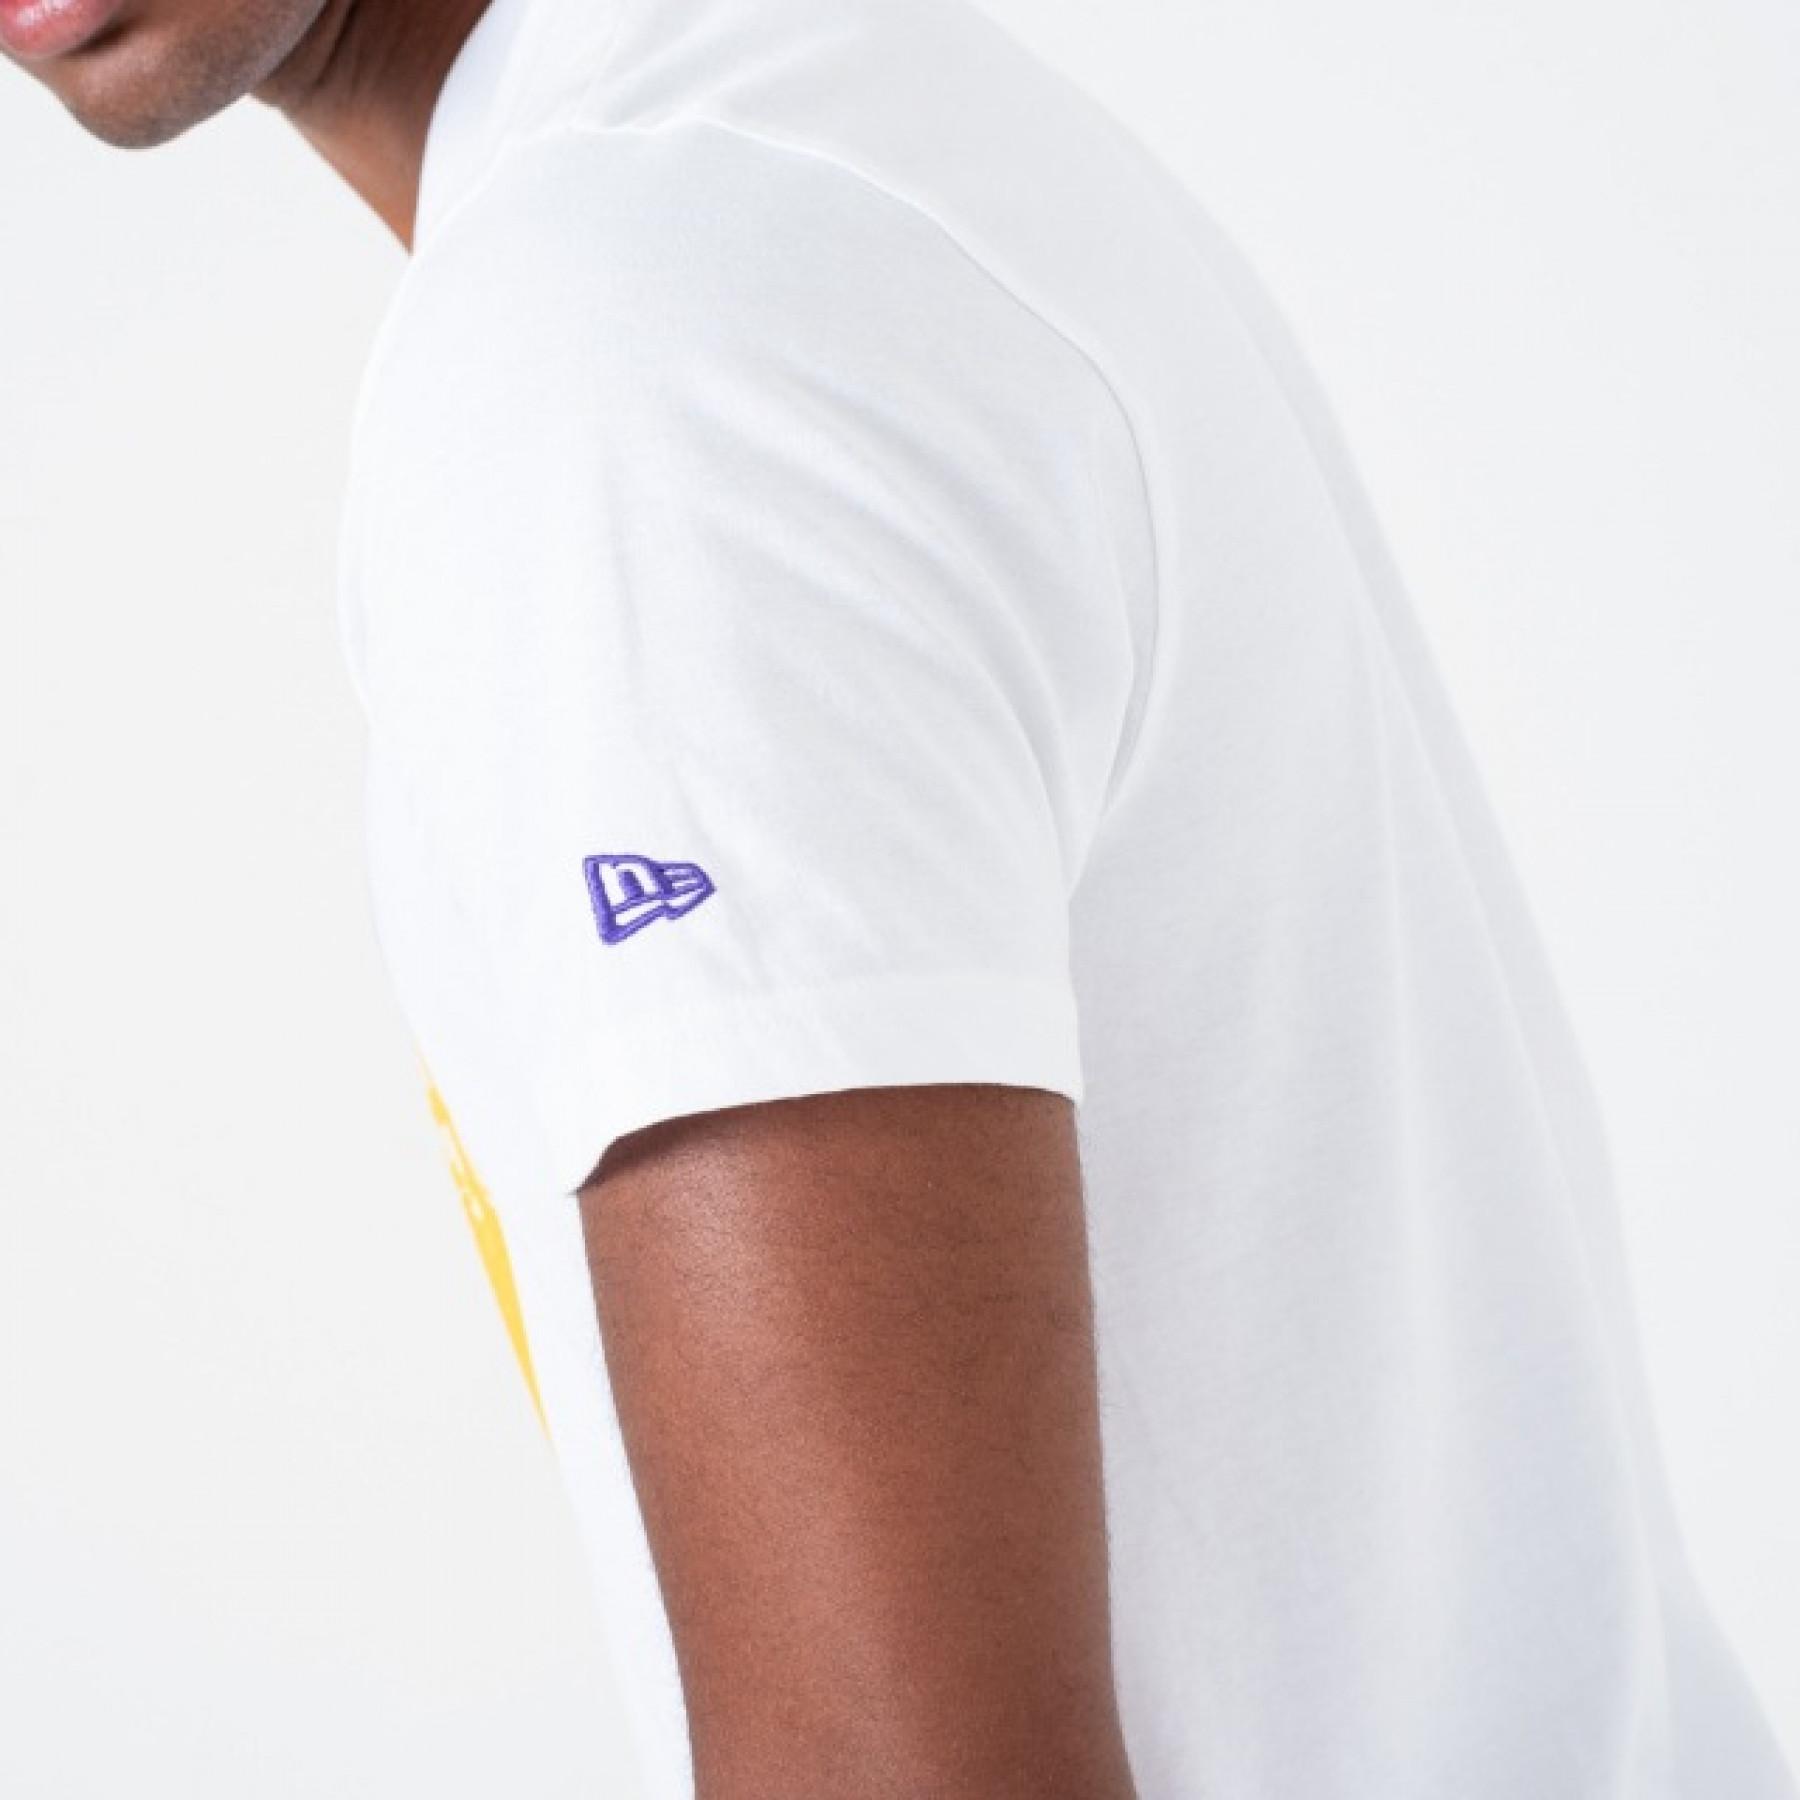 Koszulka New Era Lakers Graphic